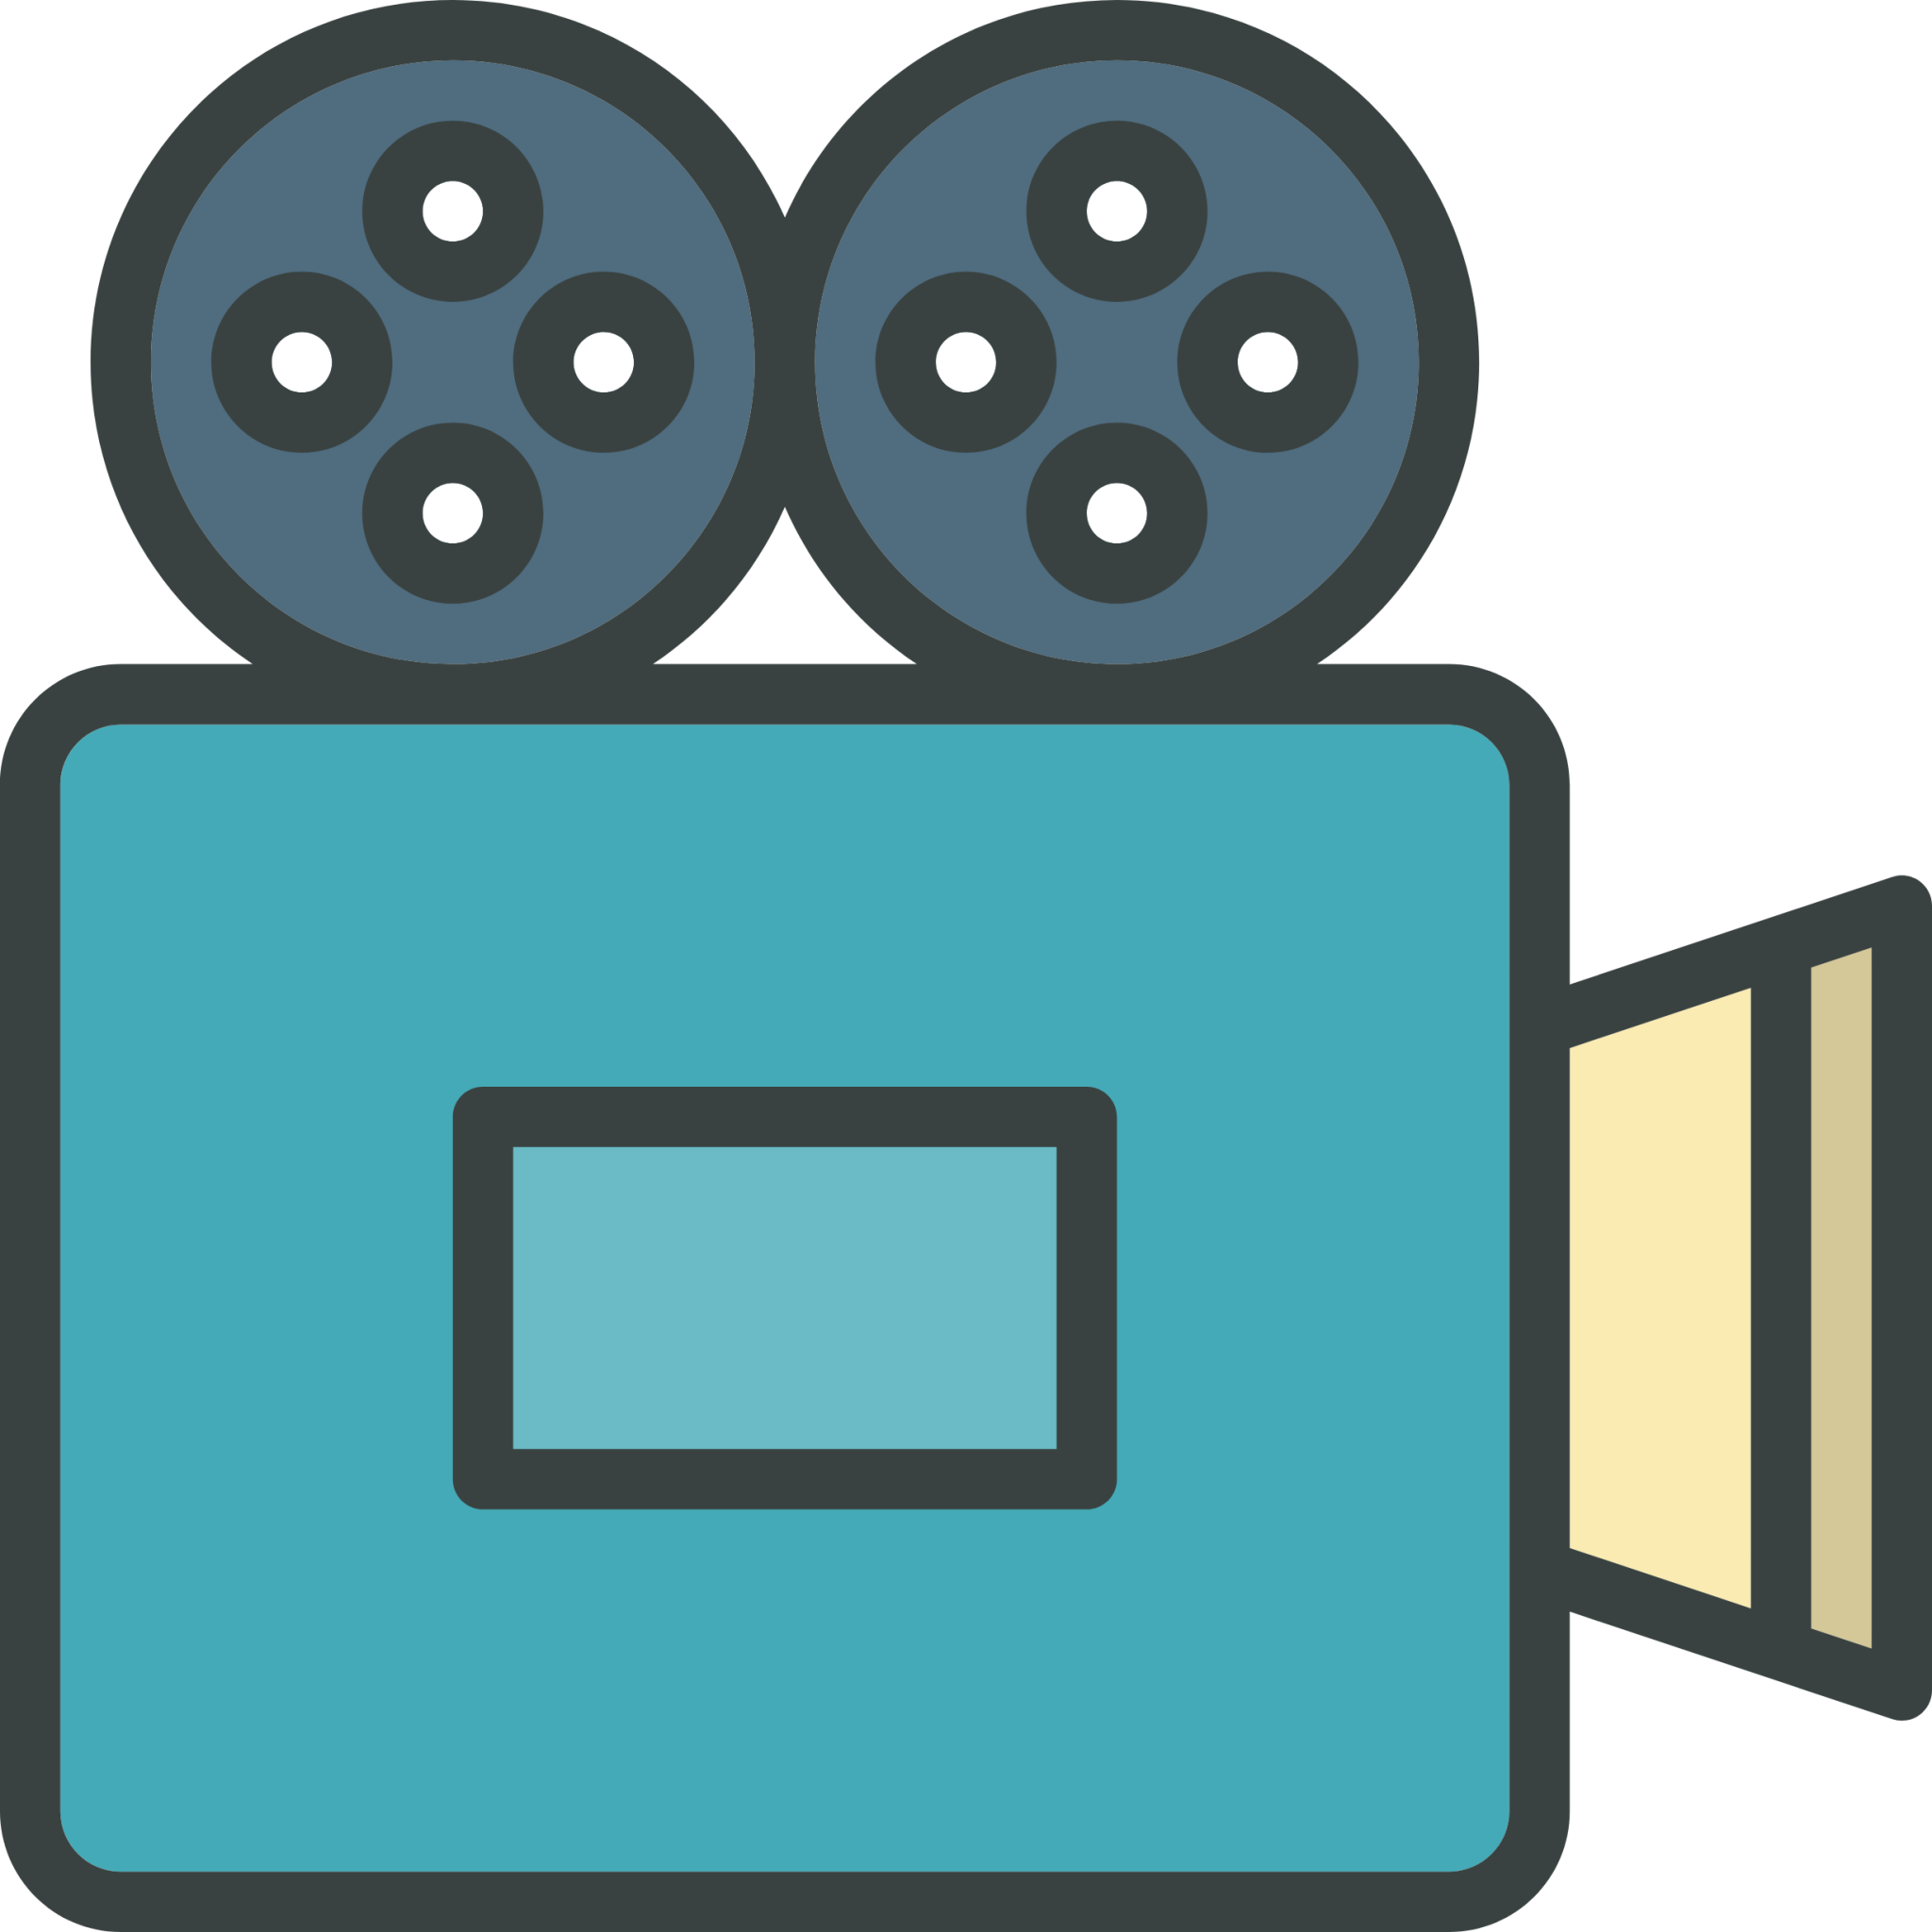 film camera icon